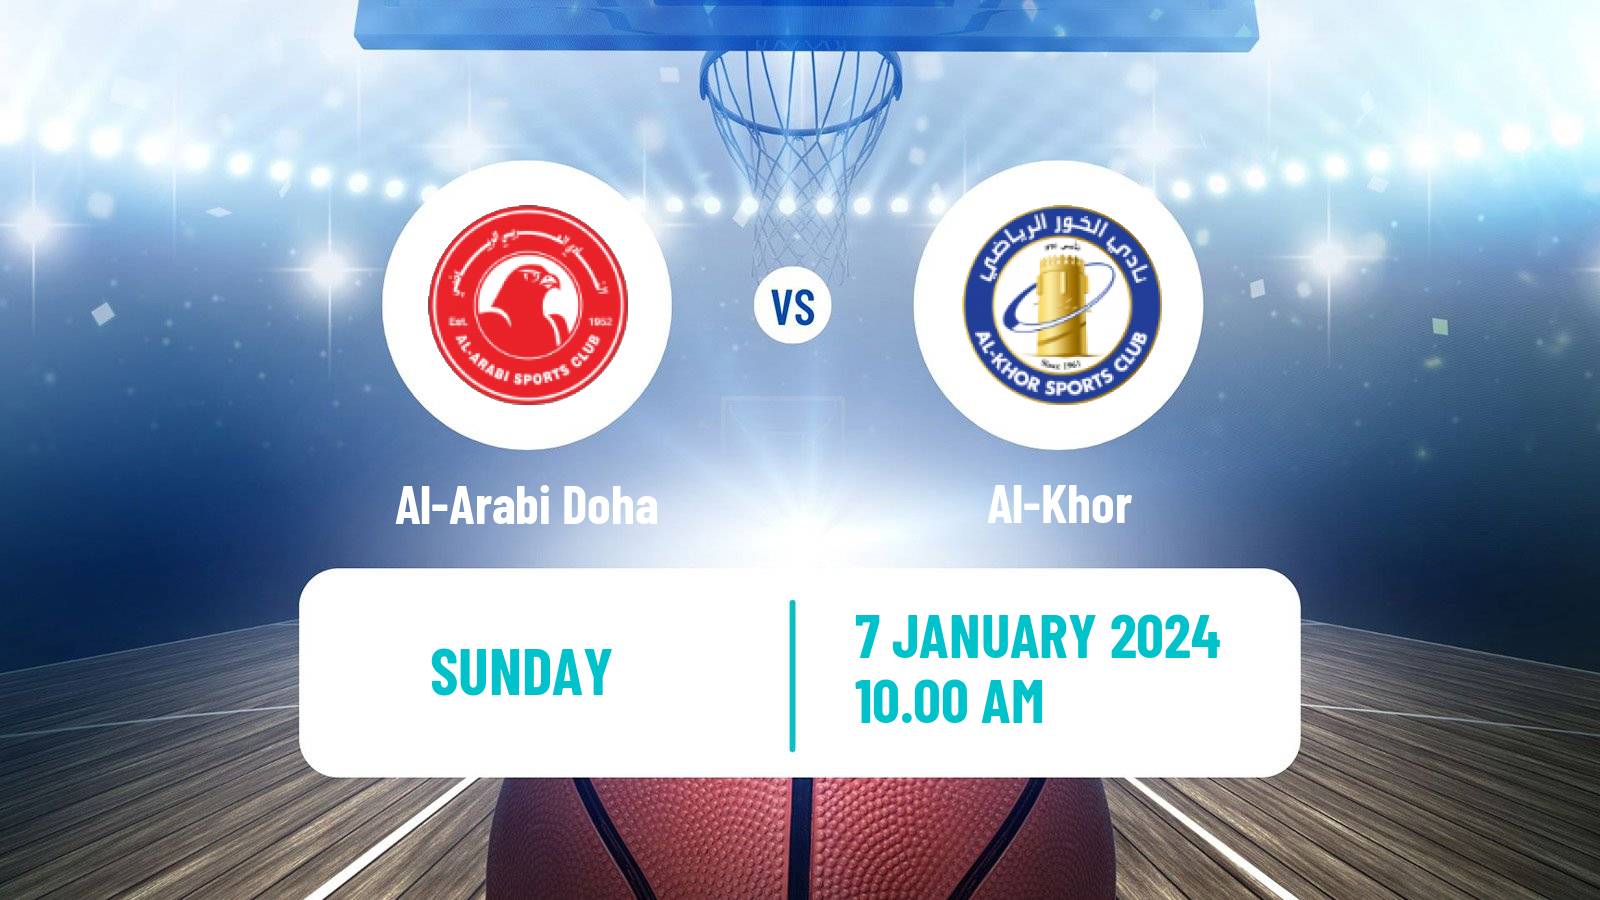 Basketball Qatar Basketball League Al-Arabi Doha - Al-Khor